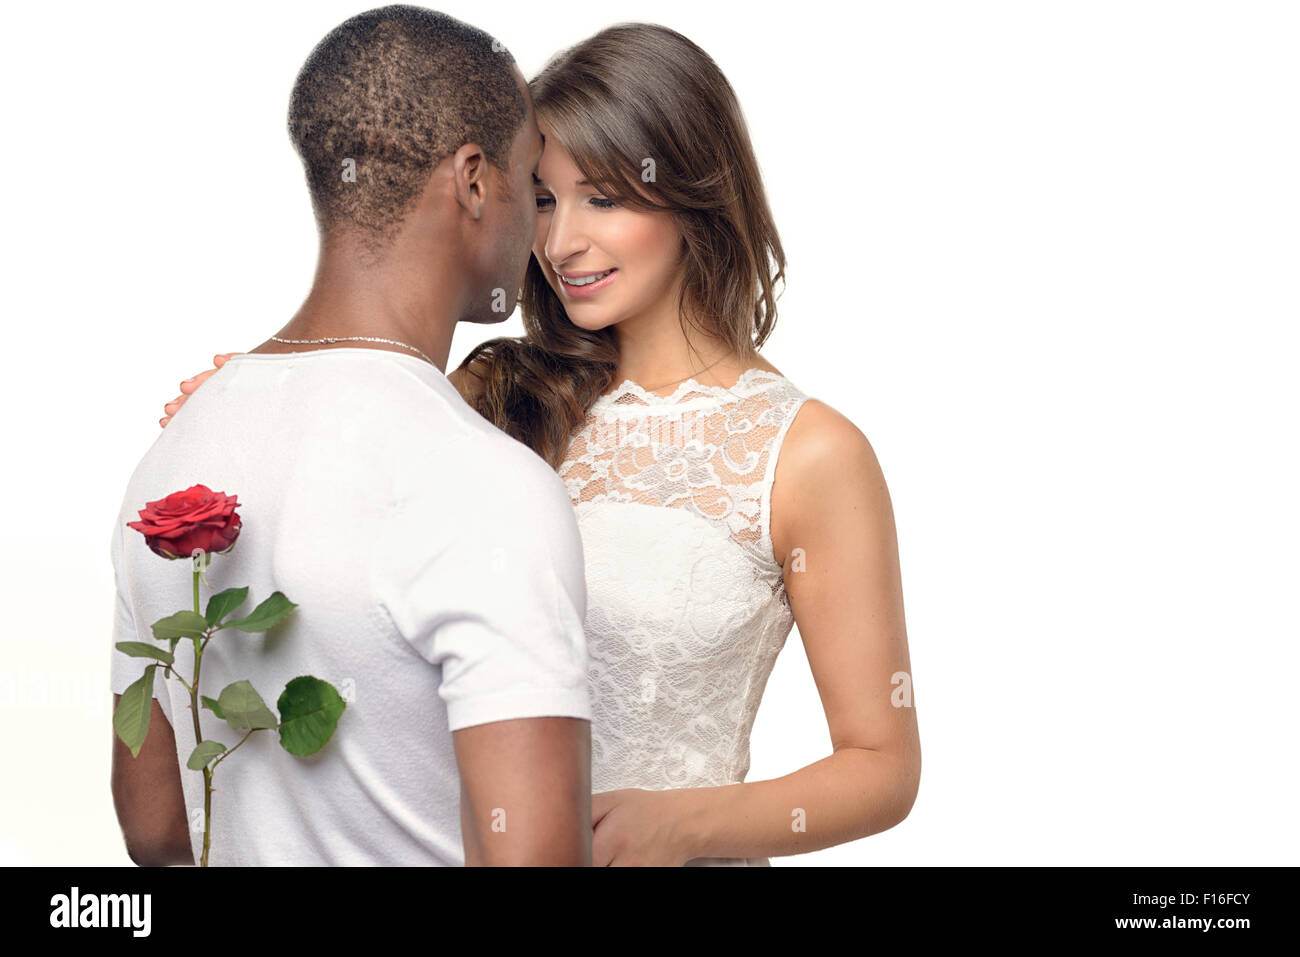 Romantico giovane con una bella donna che nasconde una rosa rossa dietro la schiena come egli si prepara a sorpresa lei per il giorno di San Valentino o wit Foto Stock